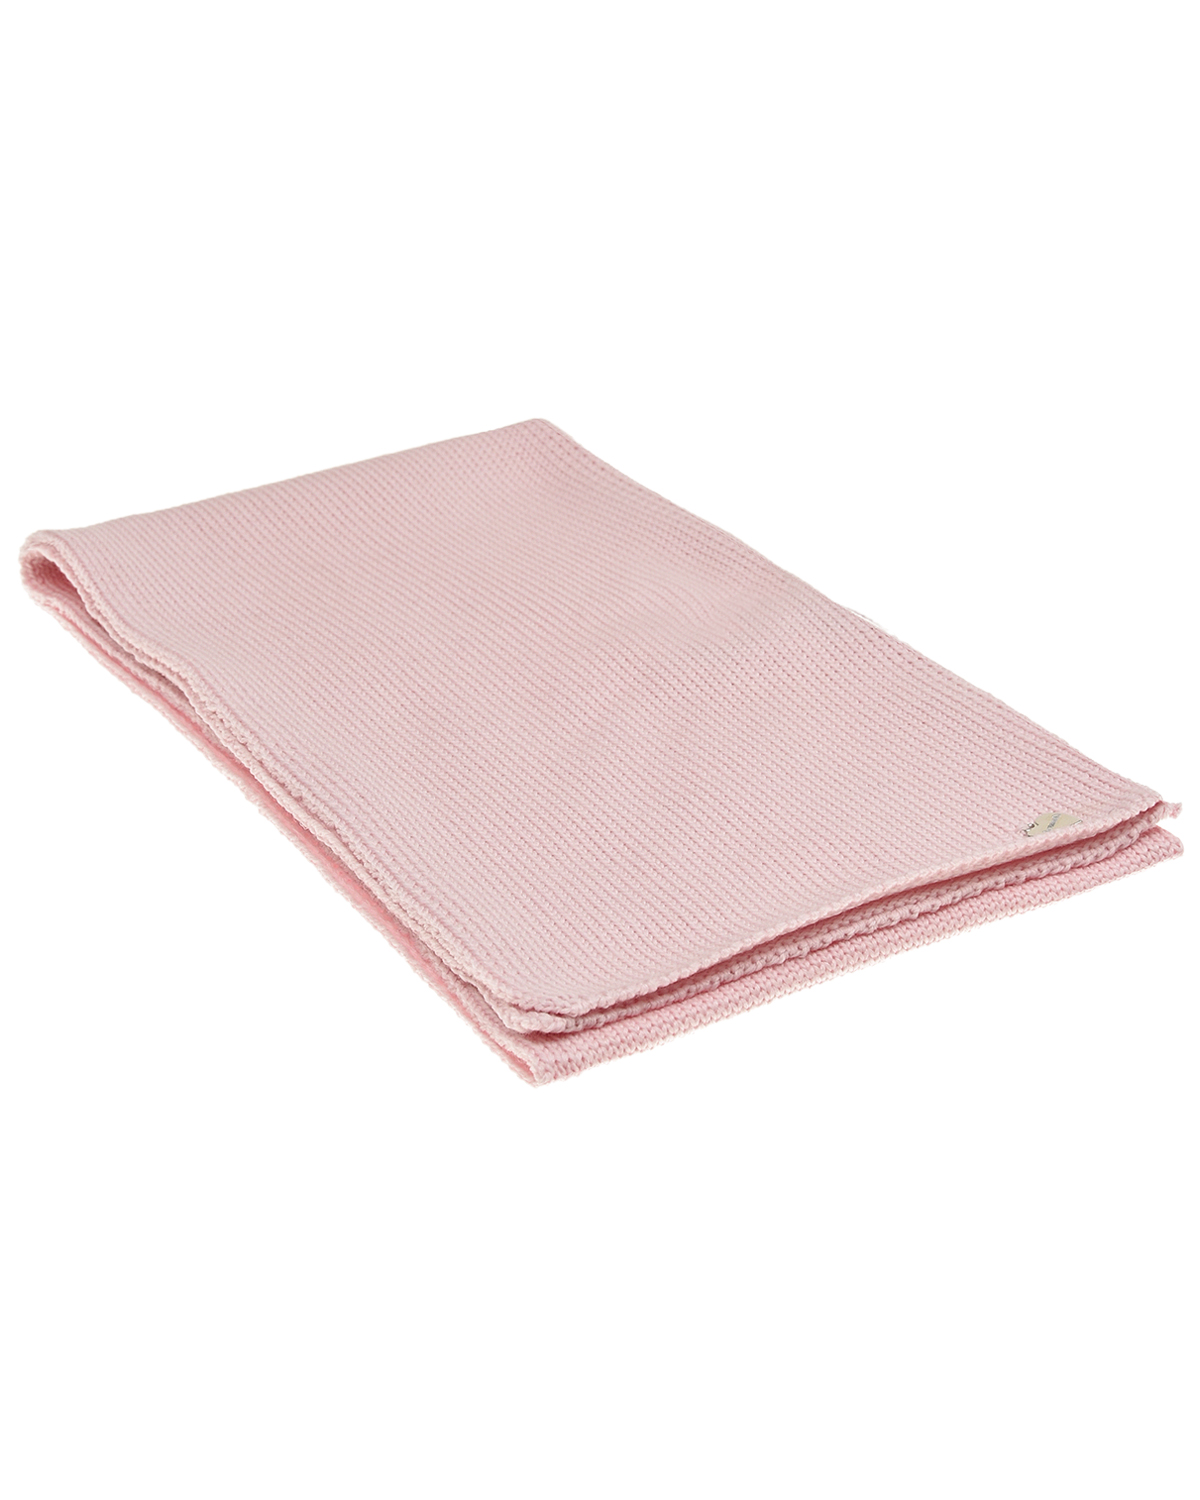 Розовый шарф 140х19 см Il Trenino детский, размер unica - фото 1